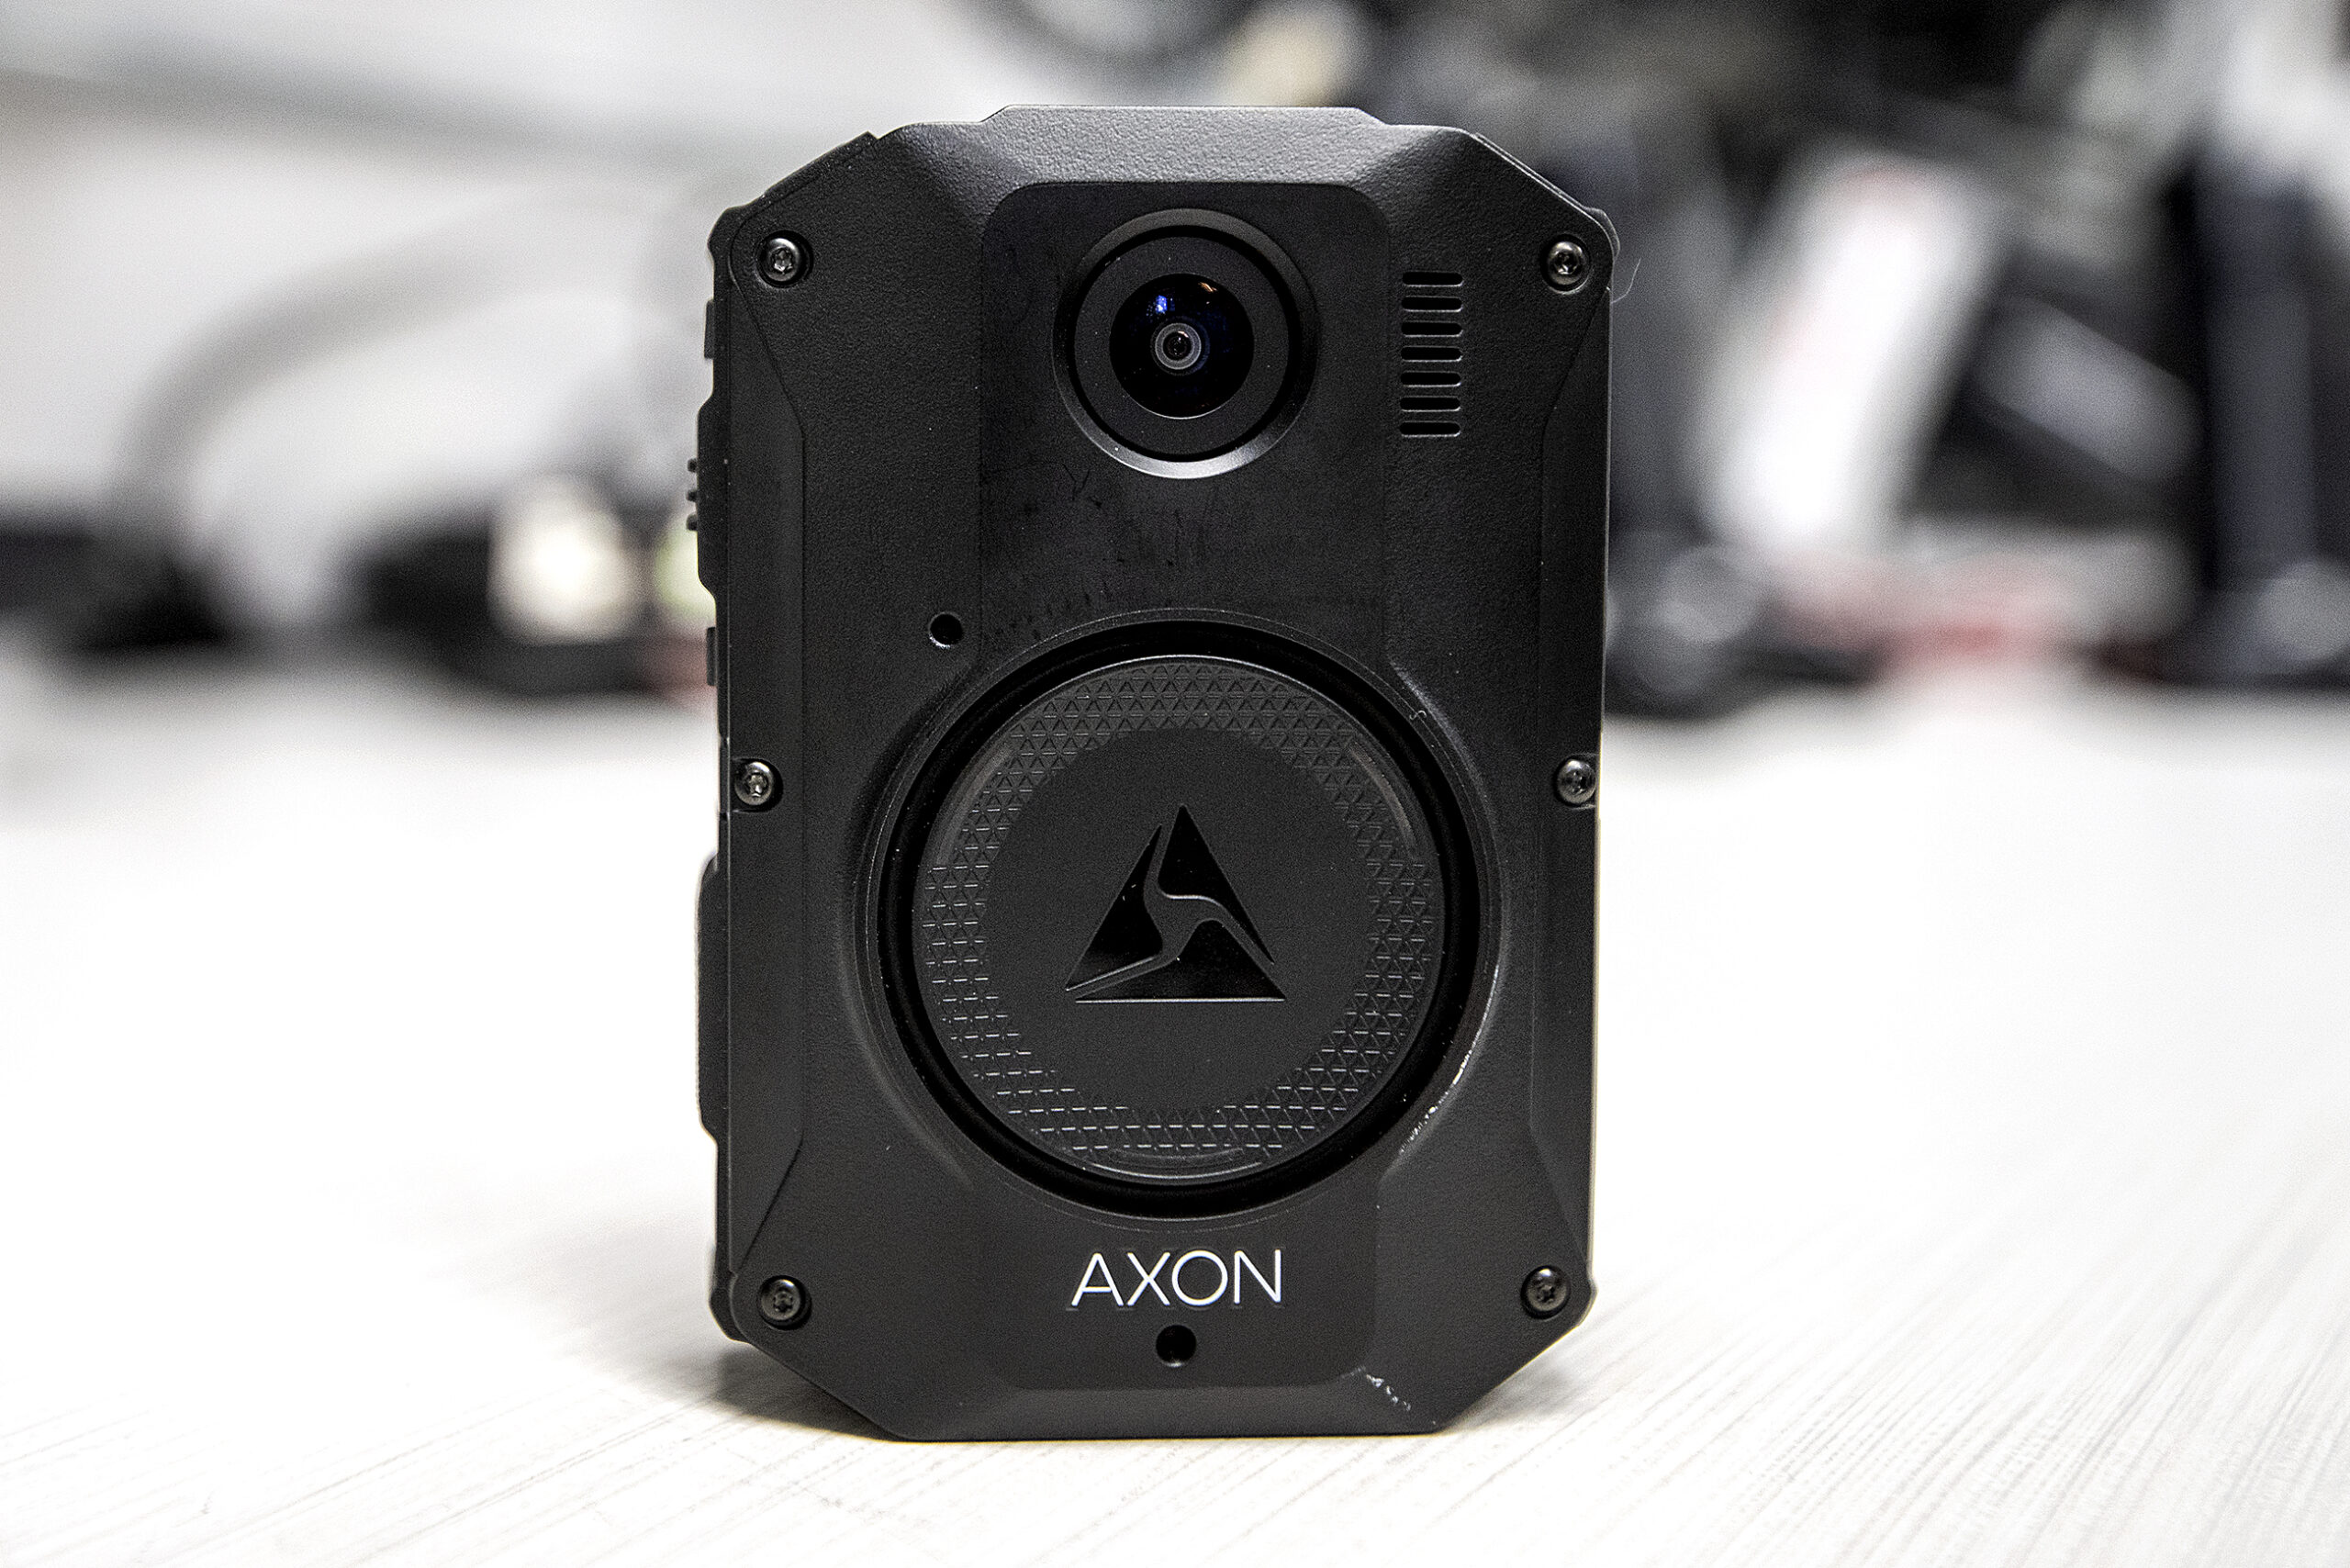 A rectangular black device has a camera lens facing outward.